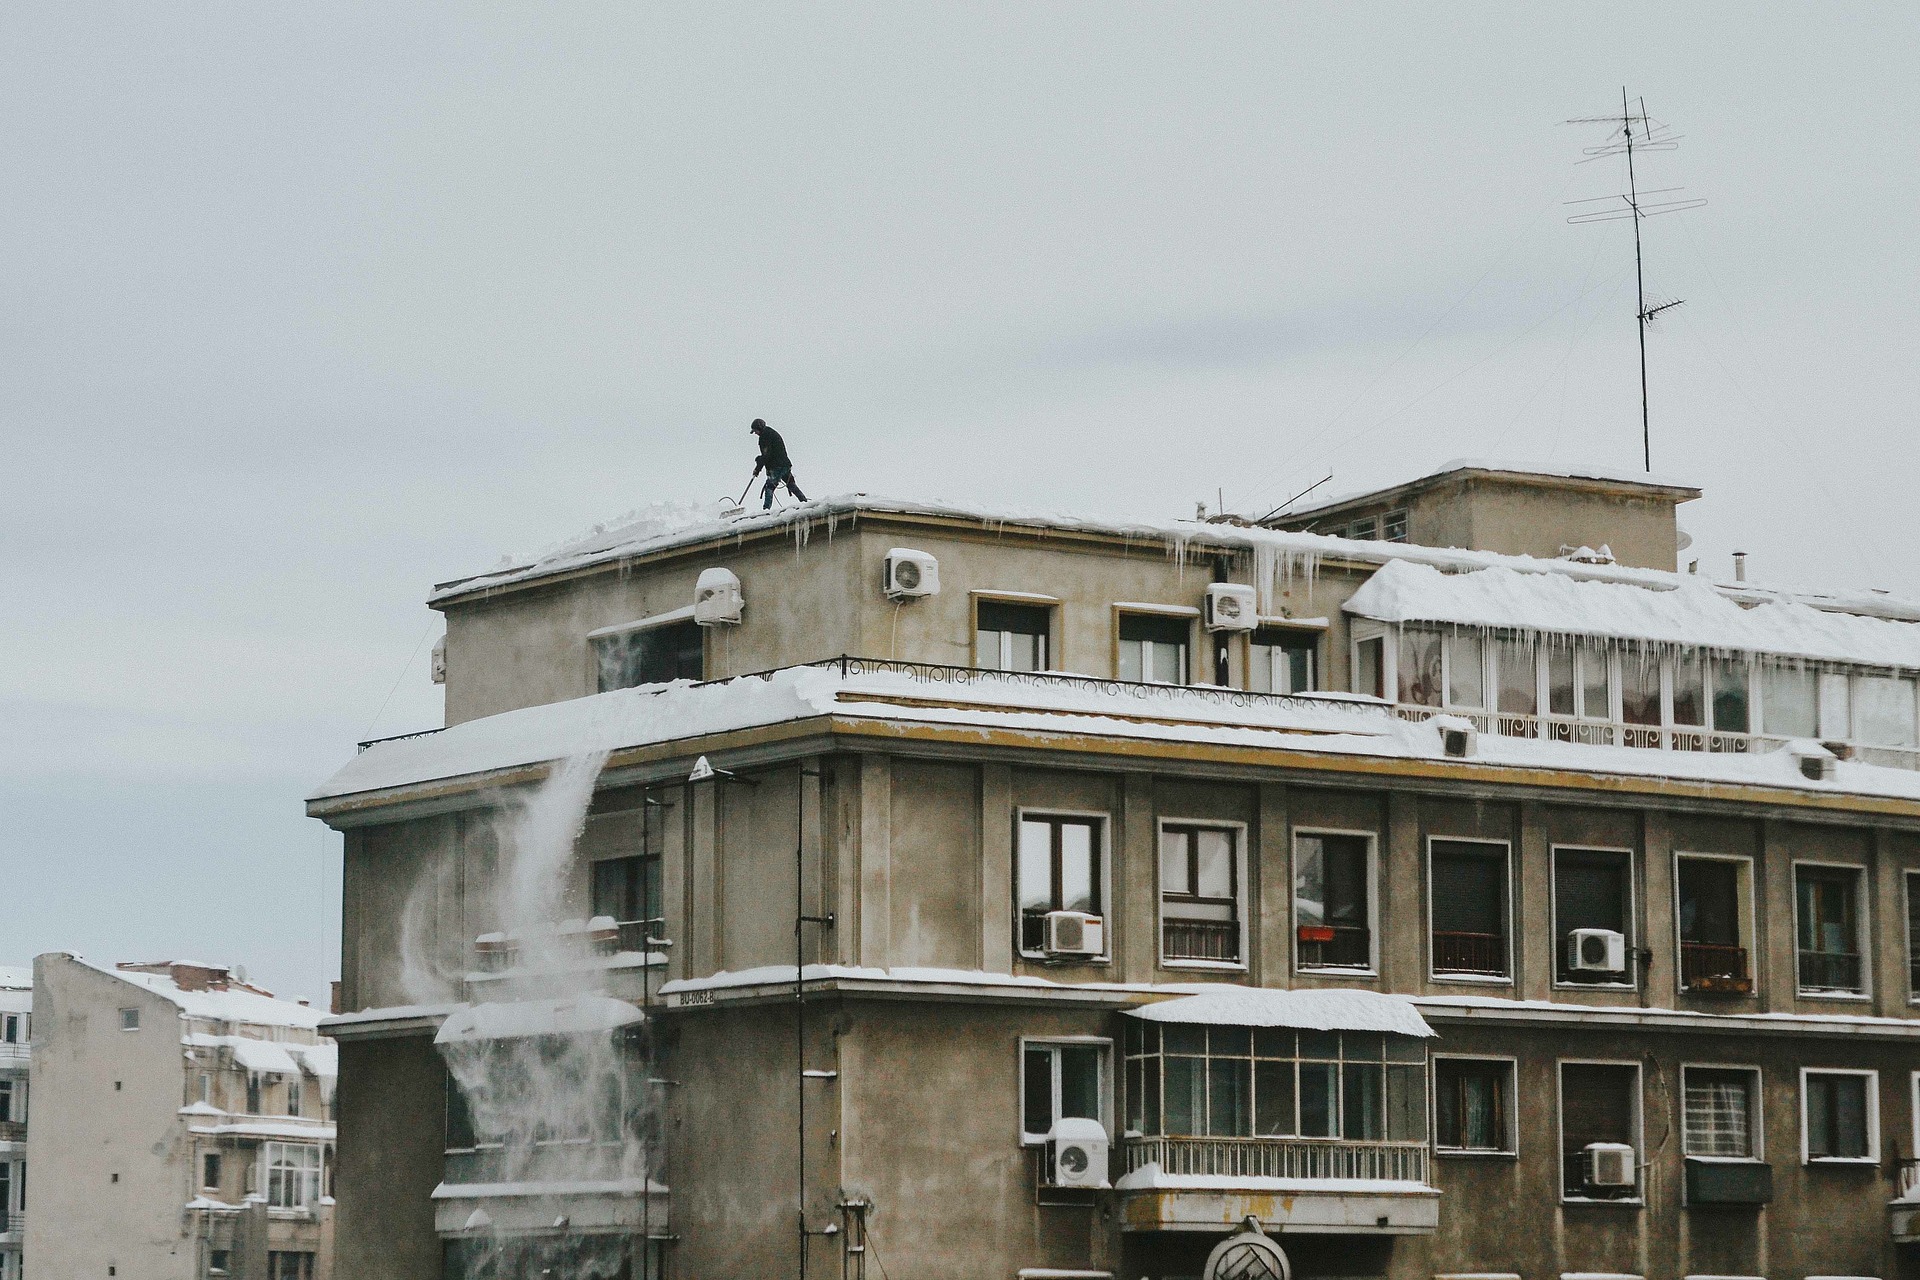 Сотрудник коммунальной службы упал в крыши многоквартирного дома в Нижнем Новгороде  - фото 1